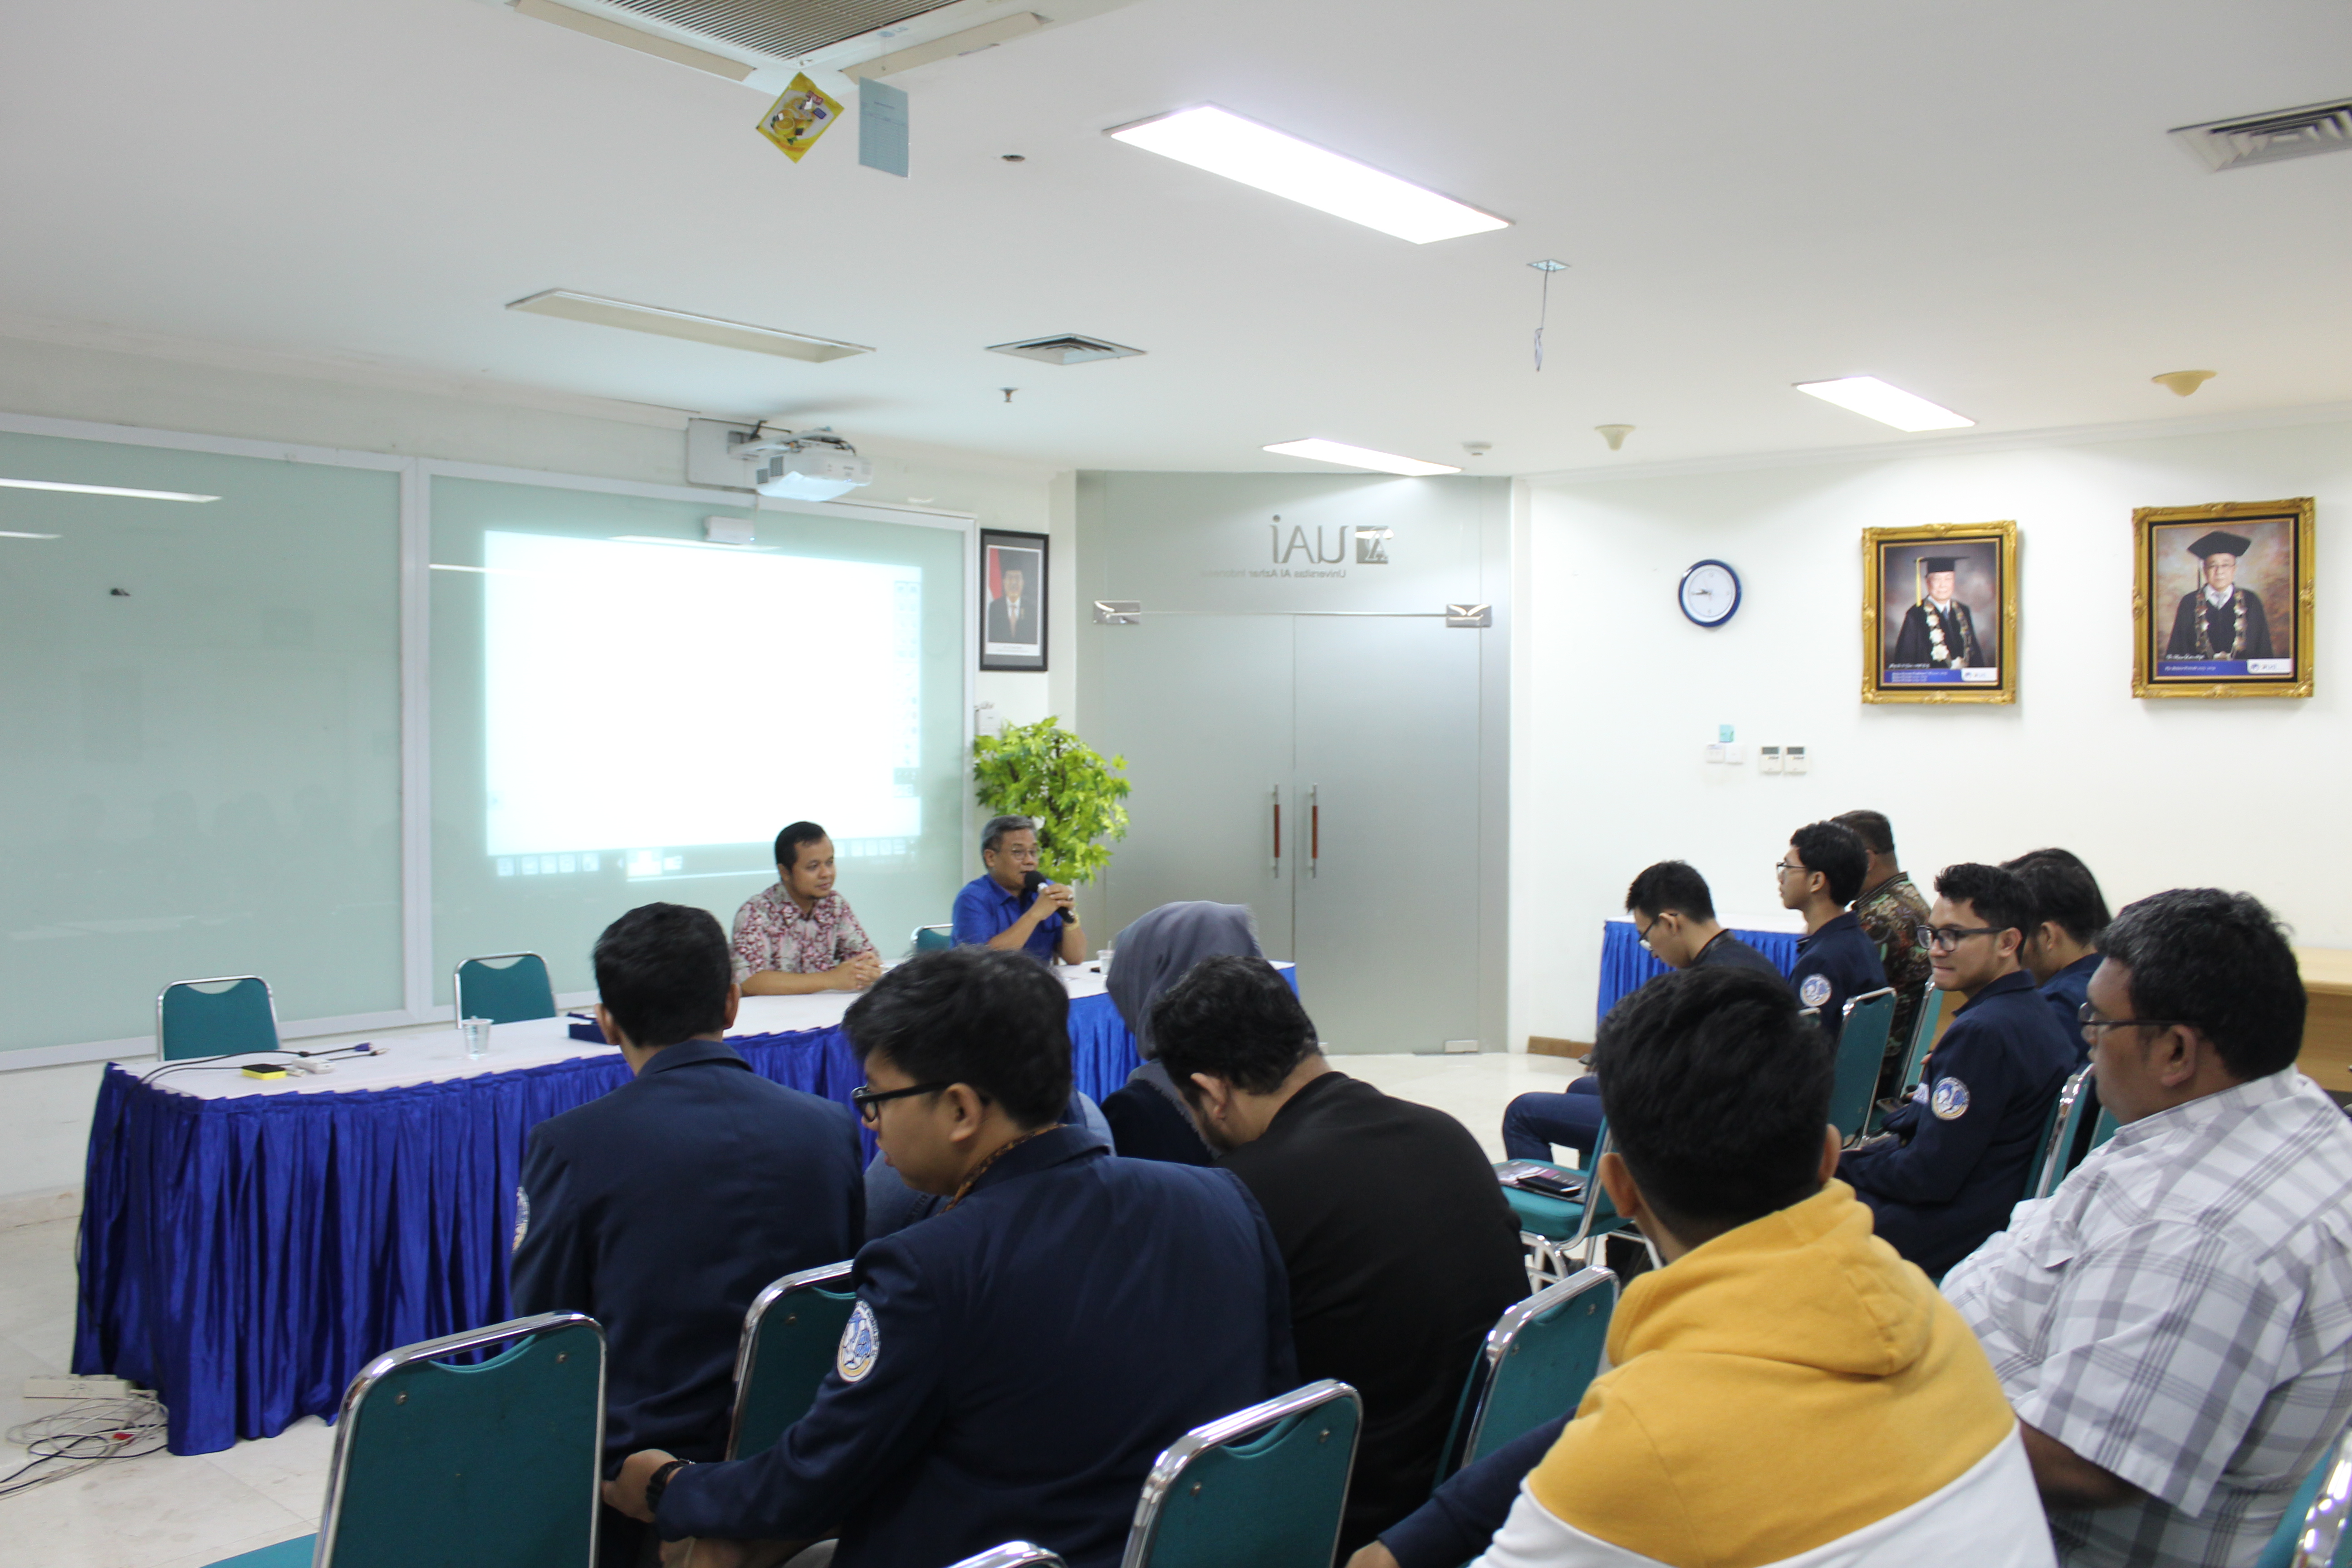 KOMAHI Universitas Al Azhar Indonesia Menggelar Studi Banding ke Bangkok